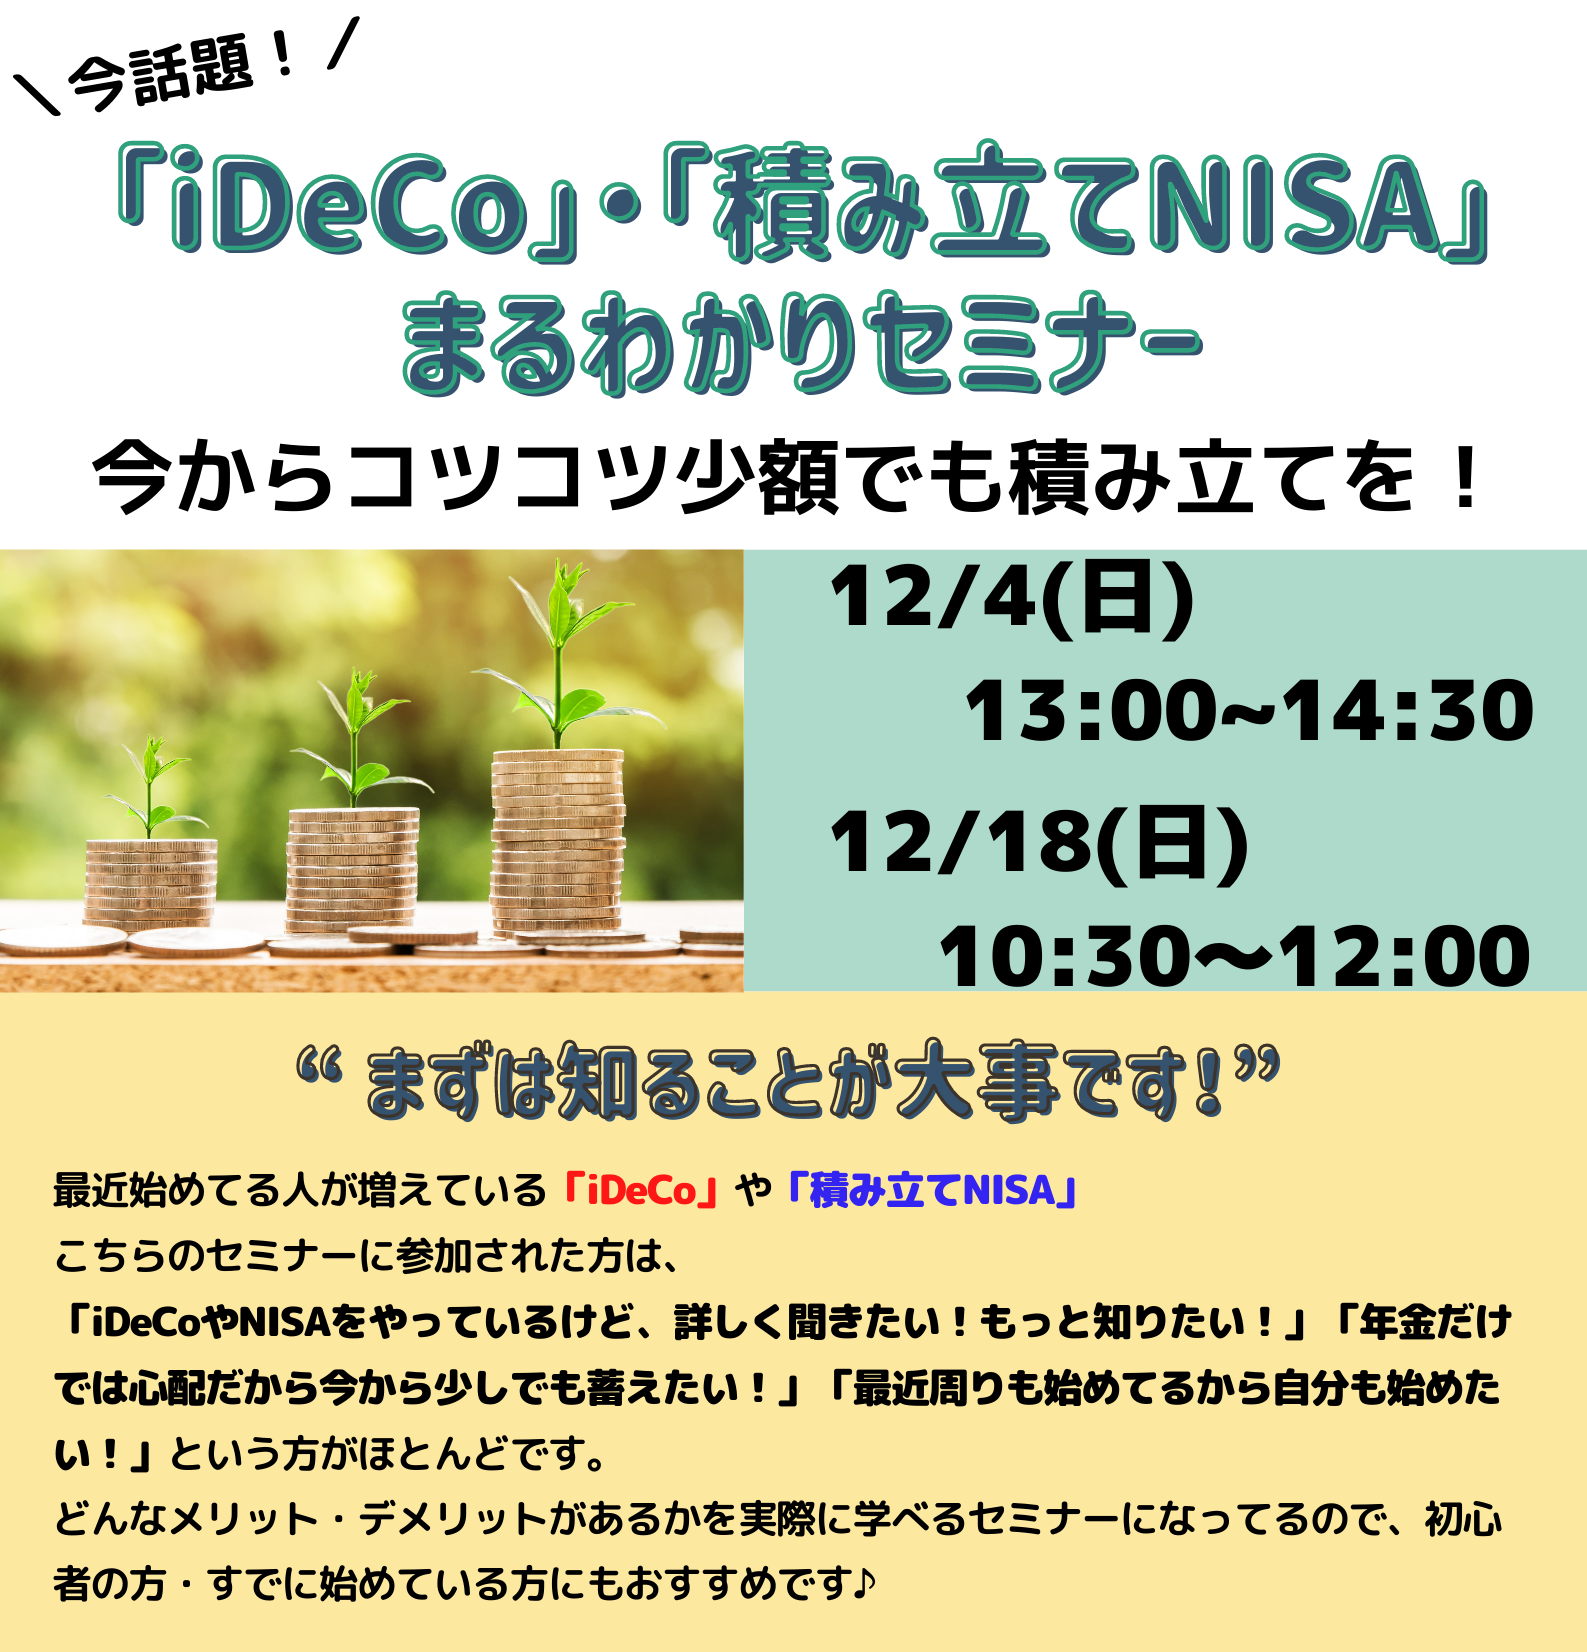 【いわき市無料セミナー】12月「iDeCo・積立NISAまるわかりセミナー」を開催します。